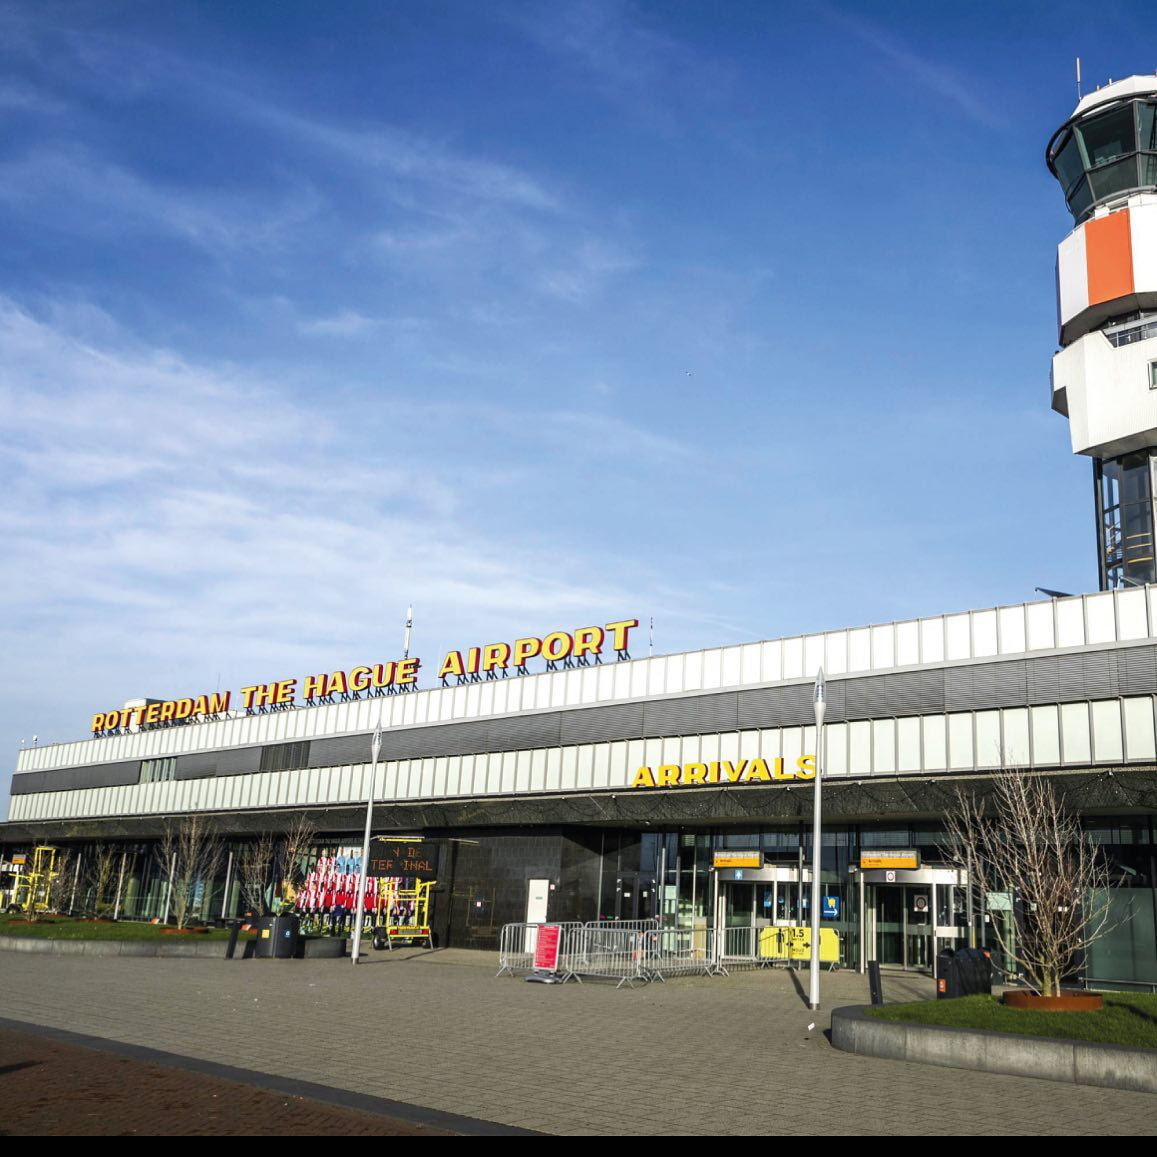 Rotterdami repülőtér Autóbérlés